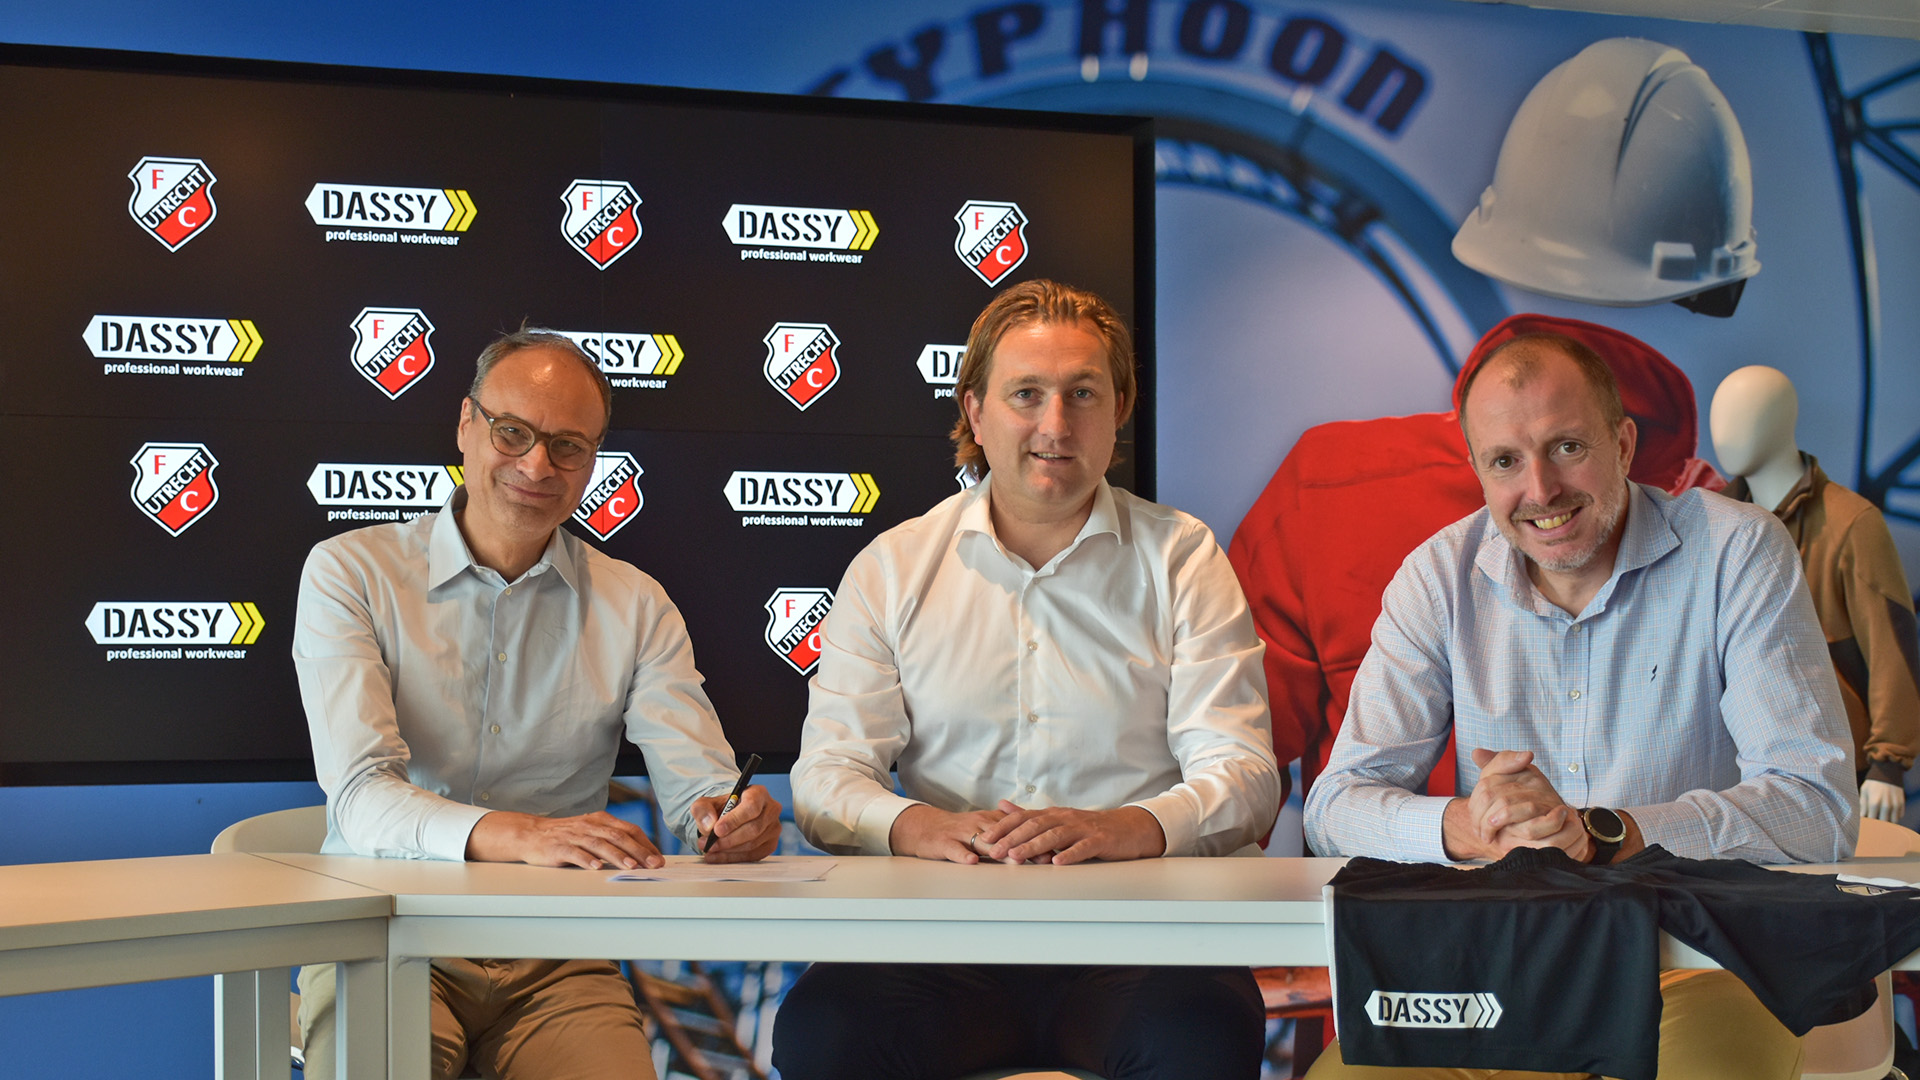 Official Partnership verlengd: DASSY professional workwear blijft aan FC Utrecht verbonden